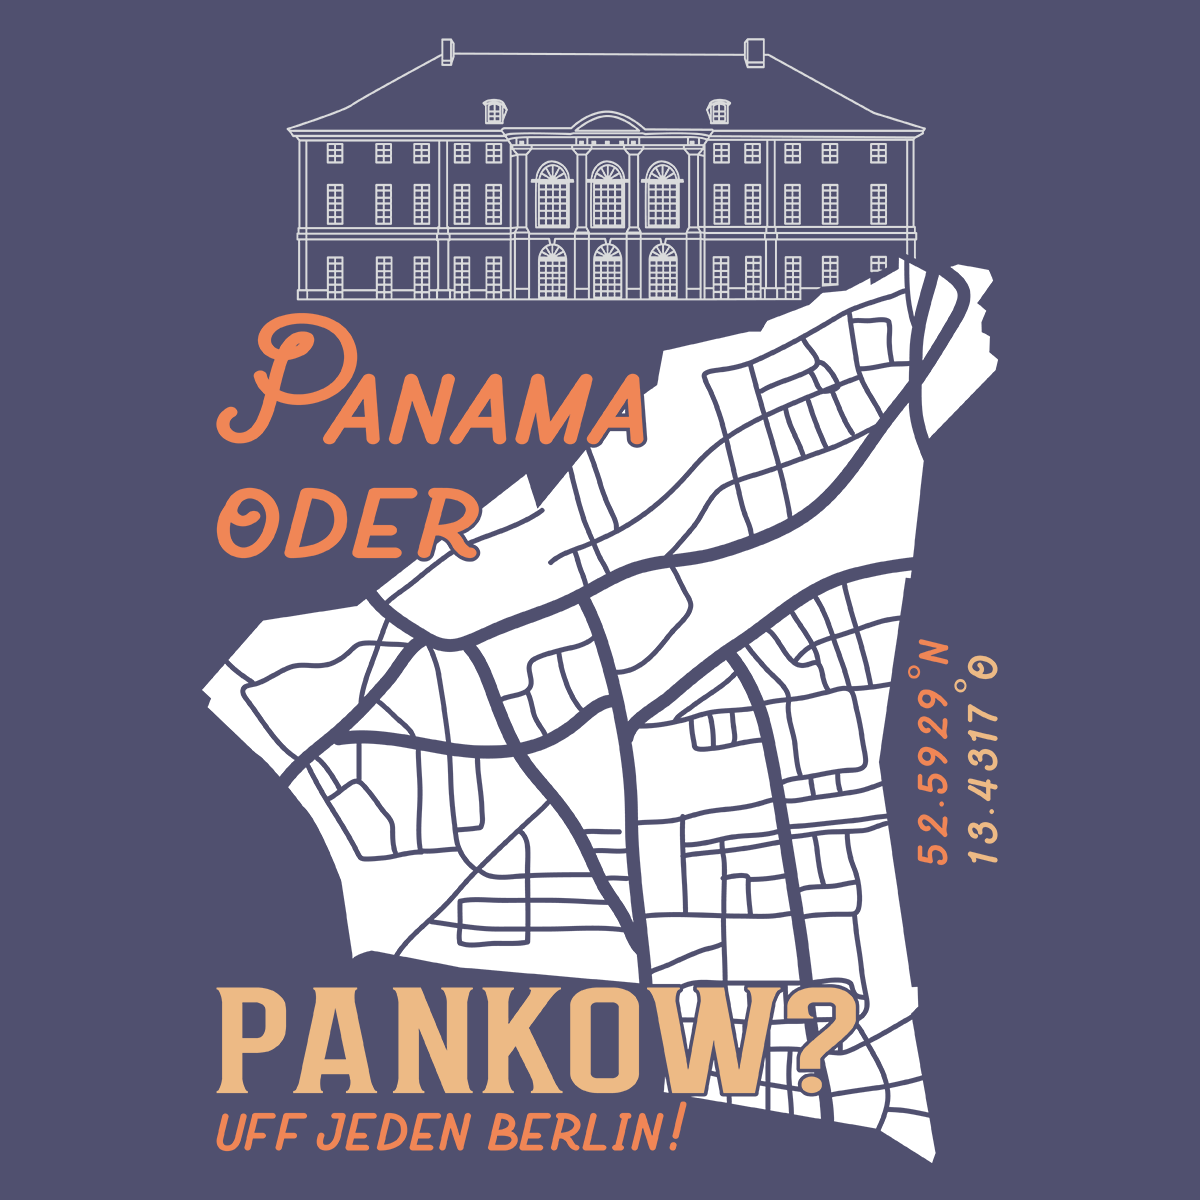 Panama oder Pankow